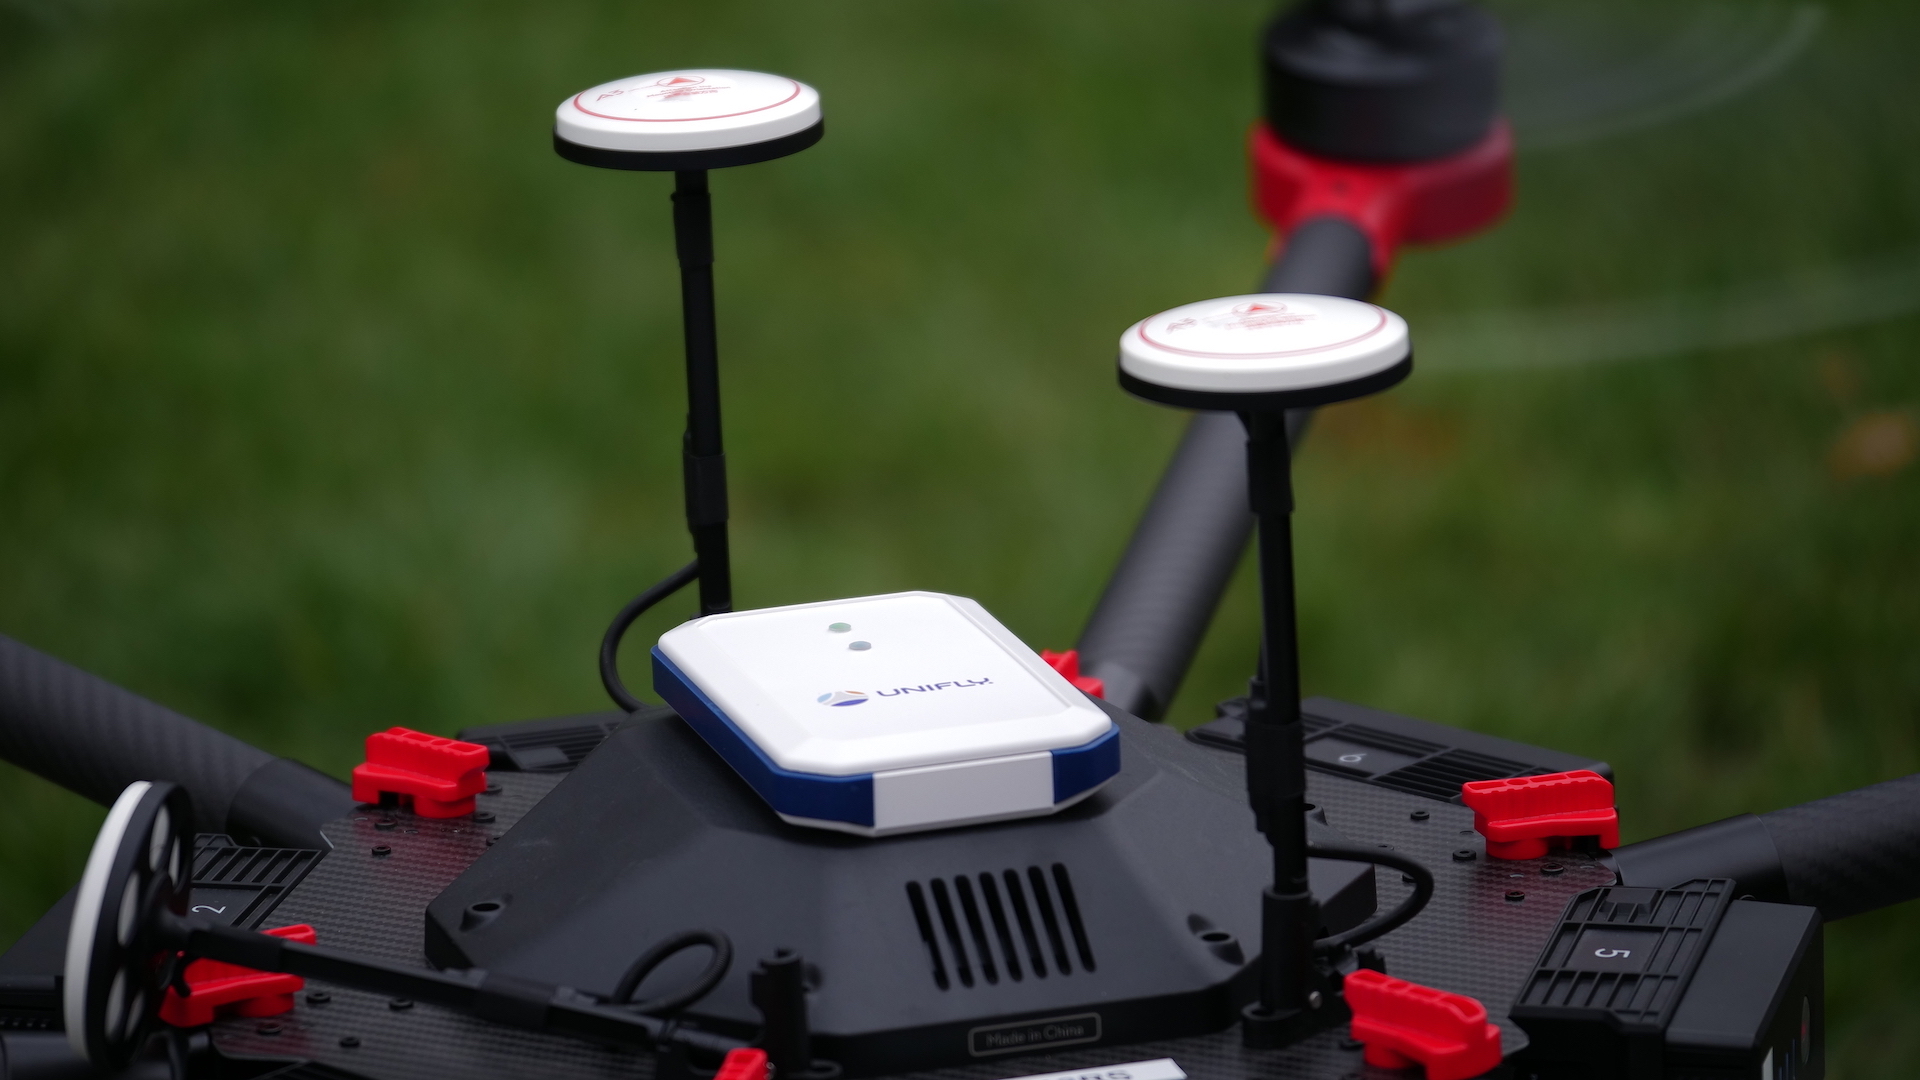 Unifly 推獨立電子識別及追蹤追置　空中無人機無所遁形